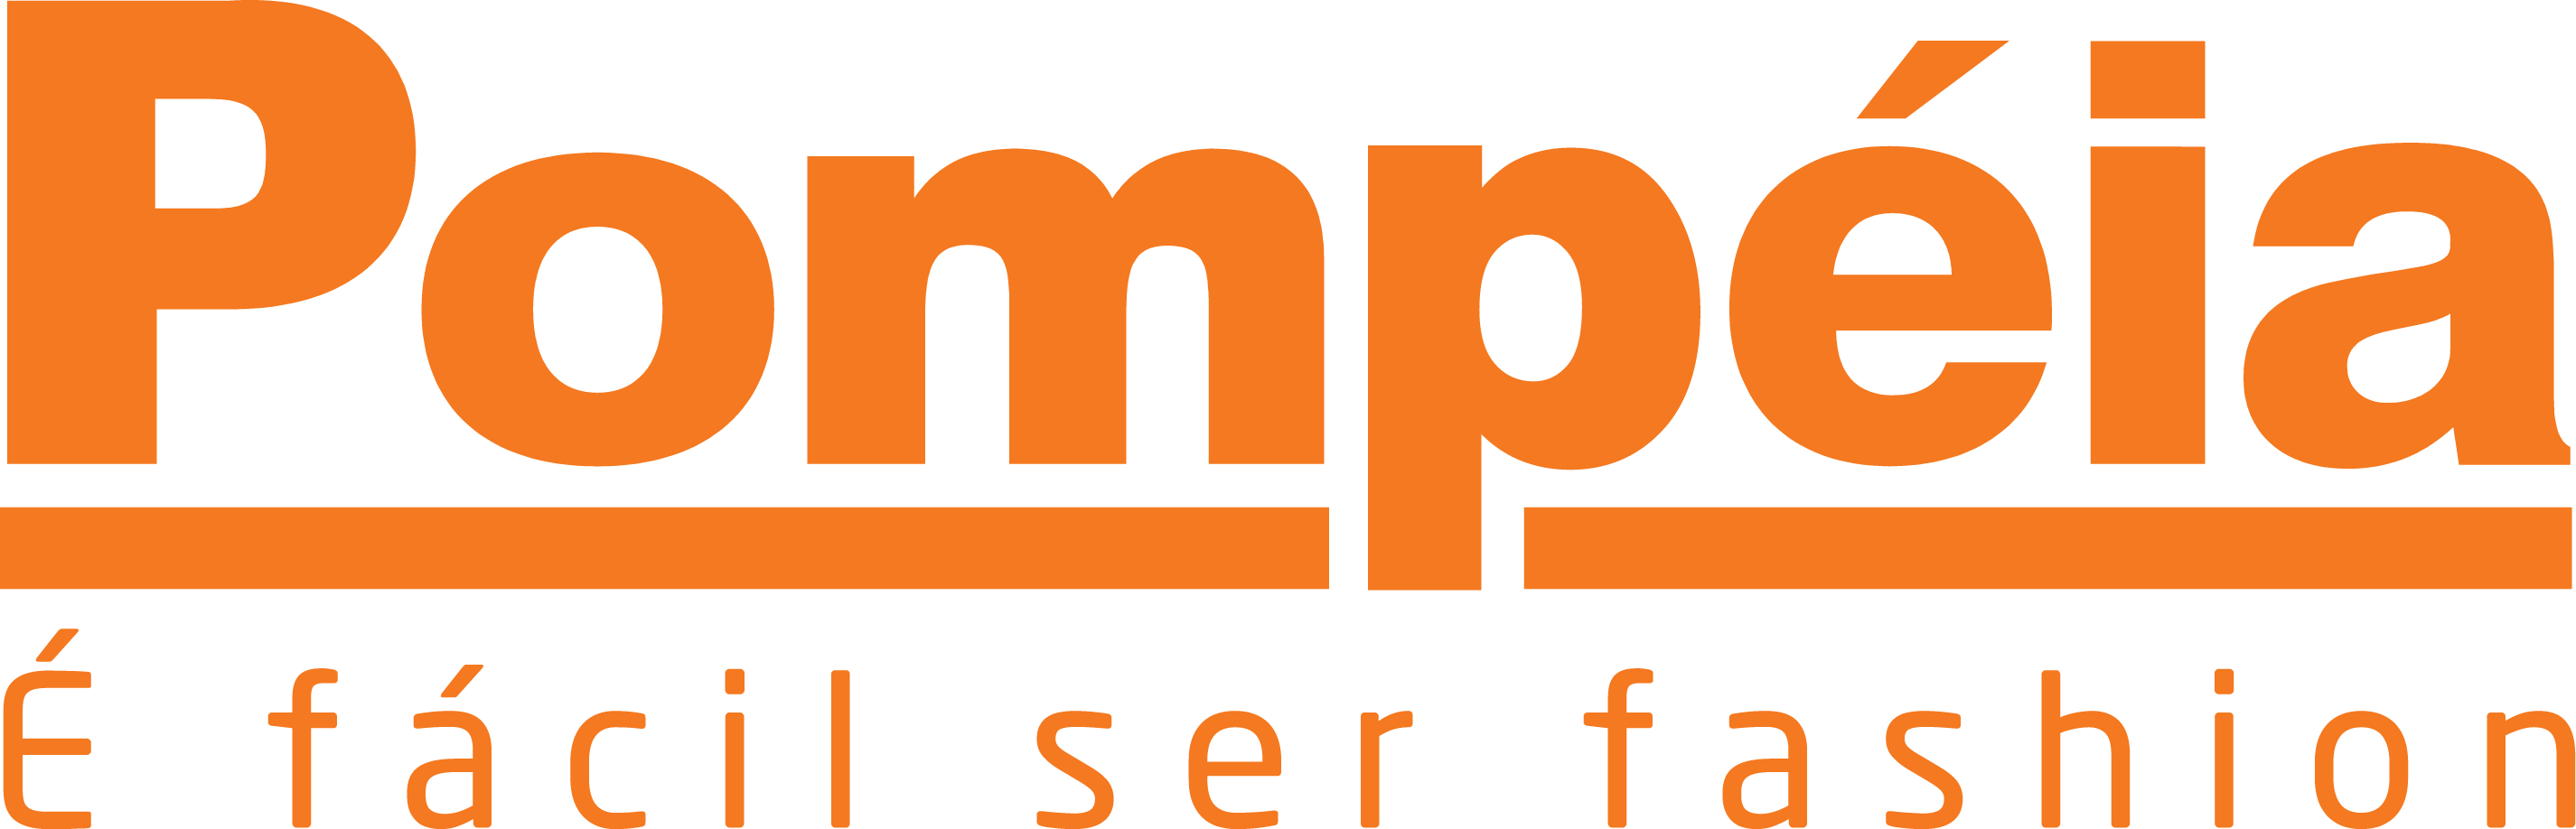 Logo Pompeia_OFICIAL.png